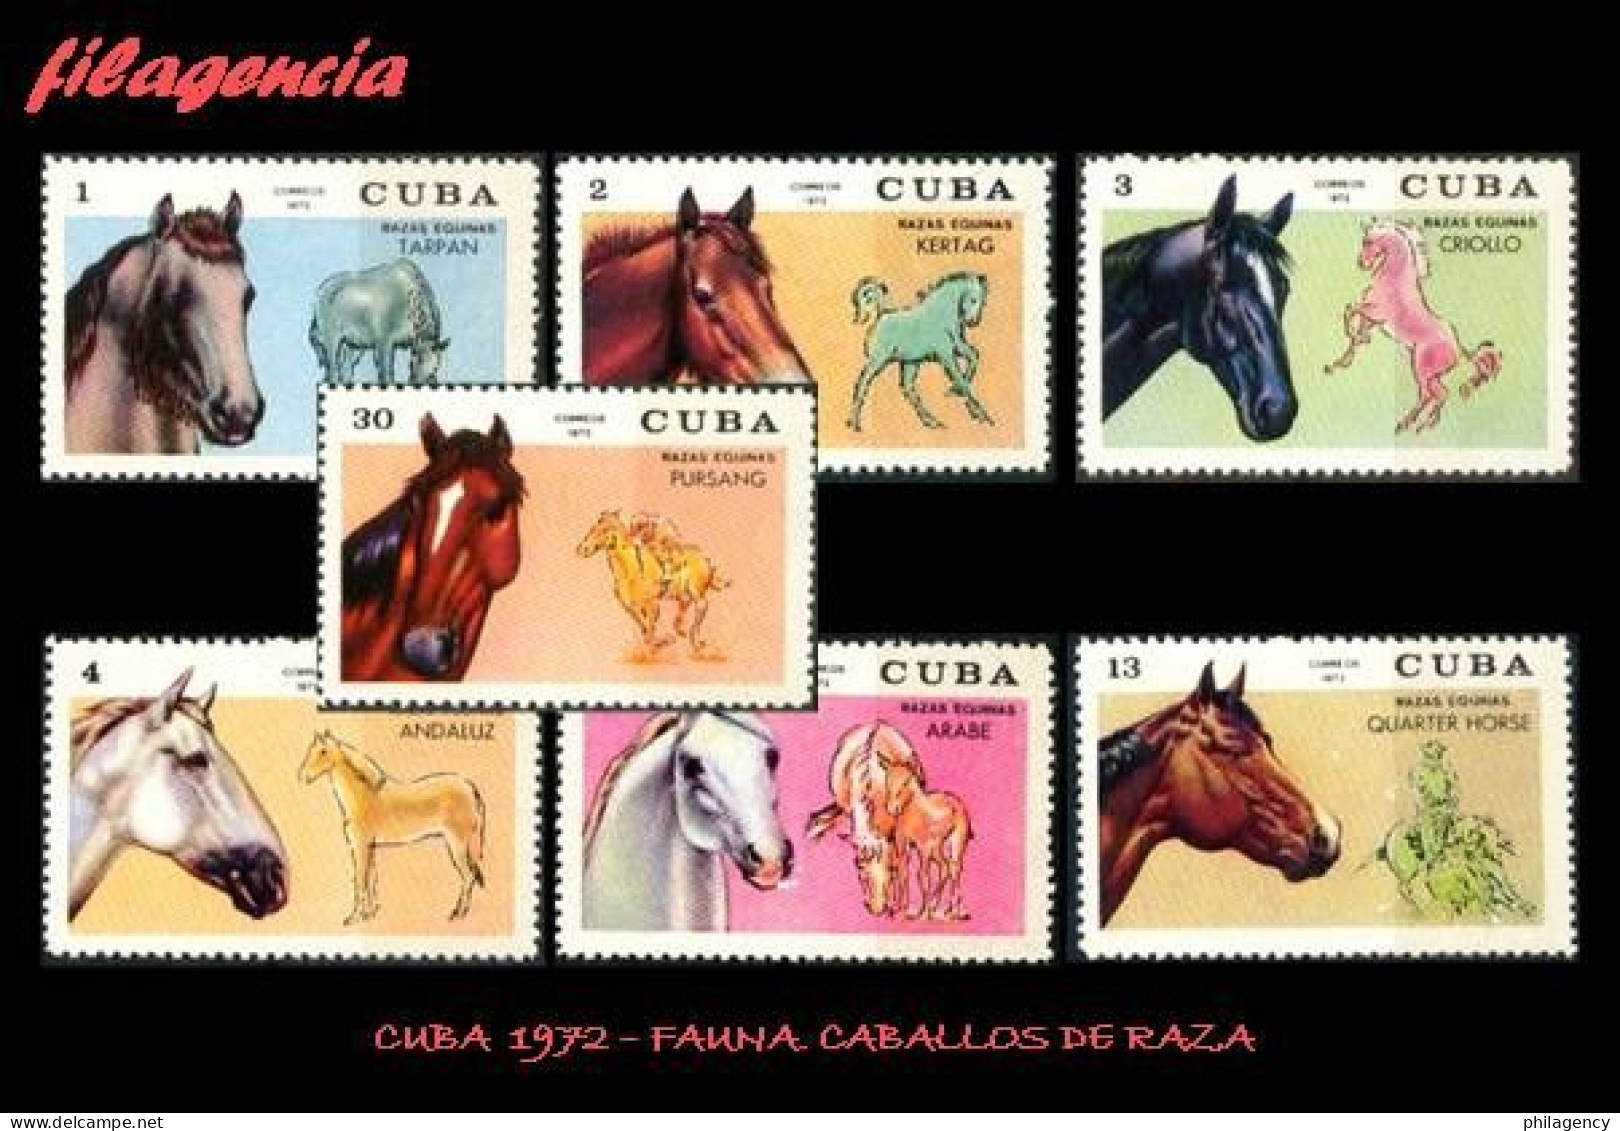 CUBA MINT. 1972-13 FAUNA. CABALLOS DE RAZA - Nuevos